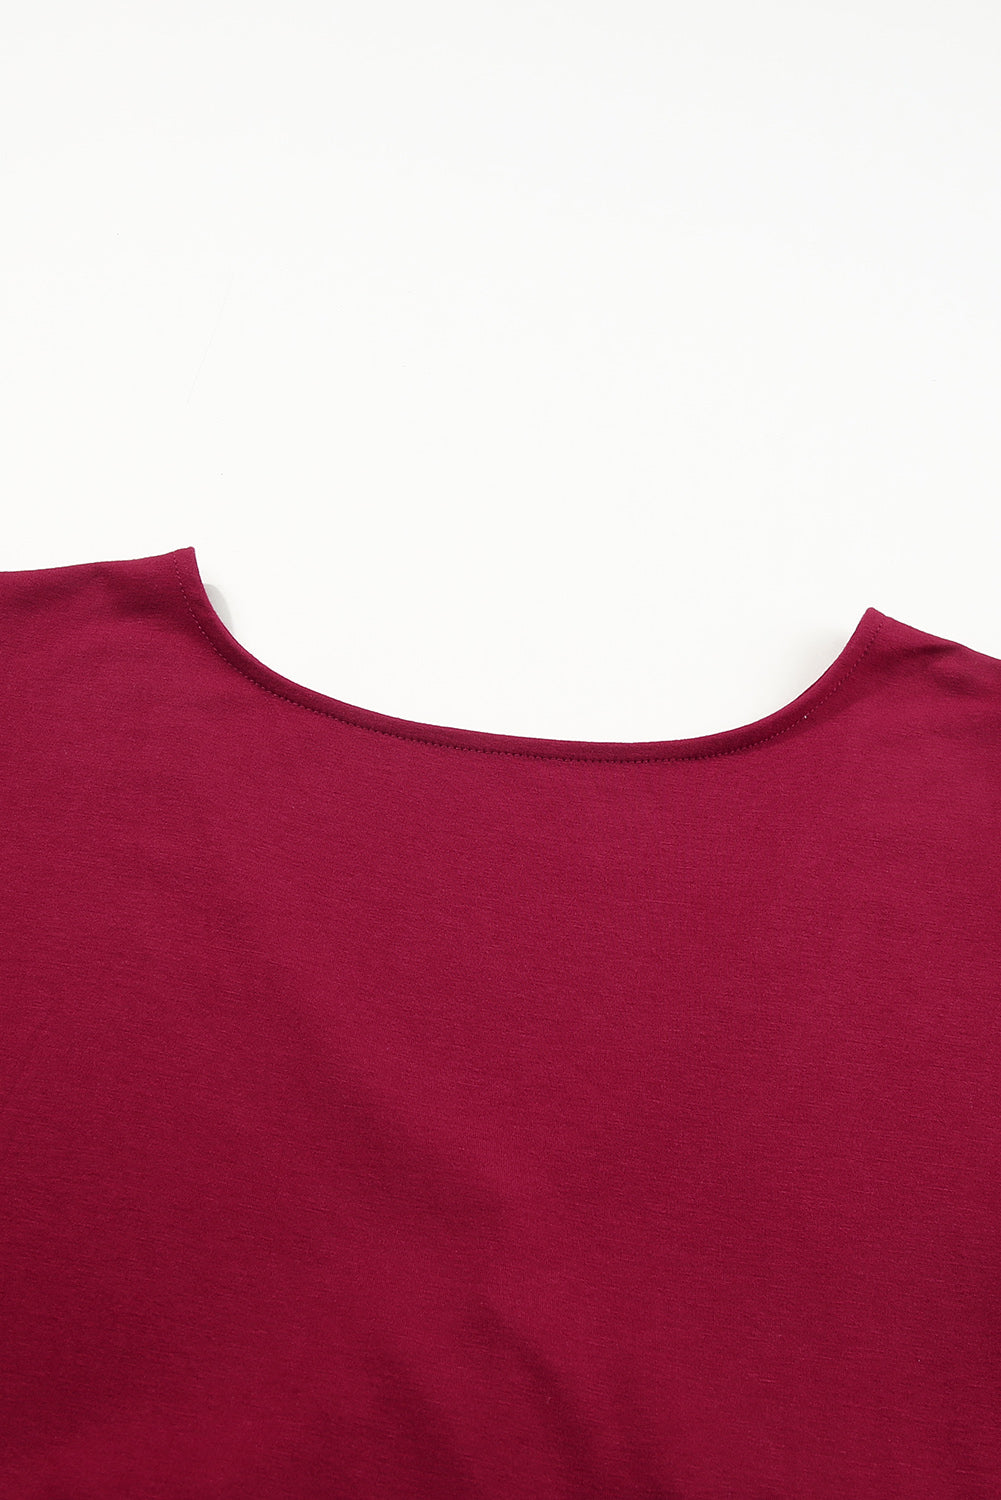 Feurige rote Plus-Size-Bluse mit V-Ausschnitt und Rüschenärmeln und Schößchen